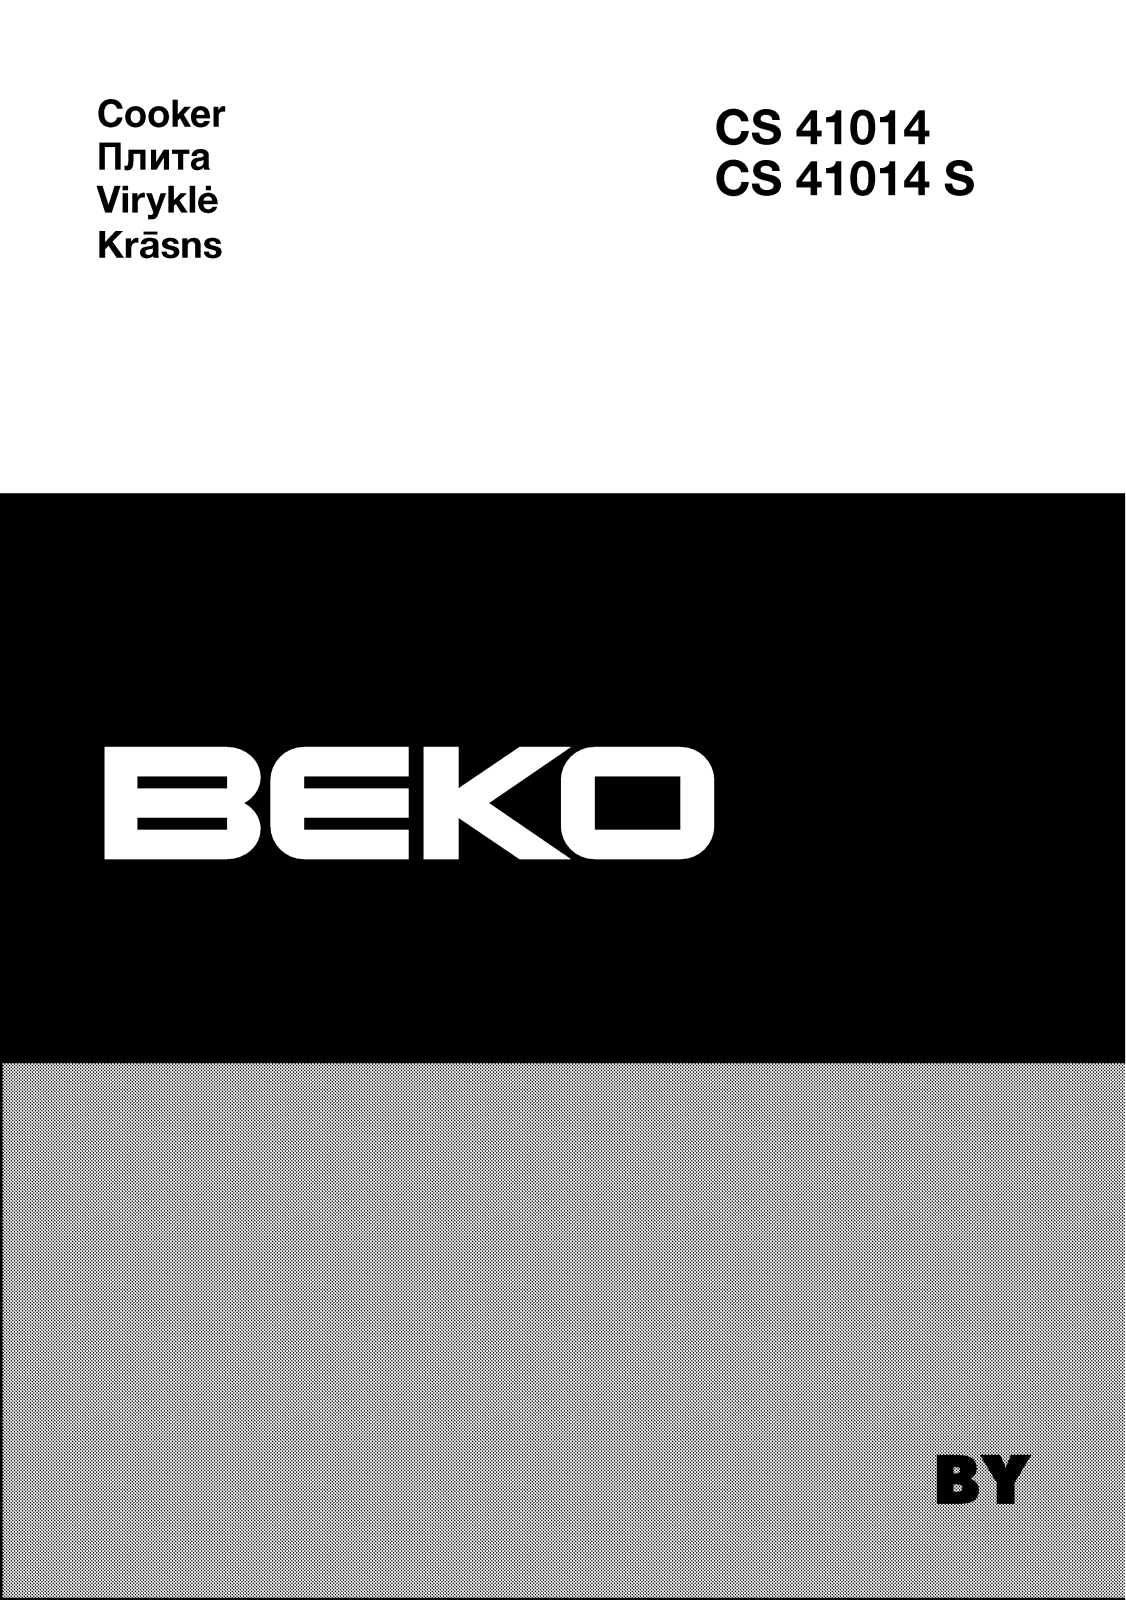 Beko CS 41014 S, CS 41014 Manual